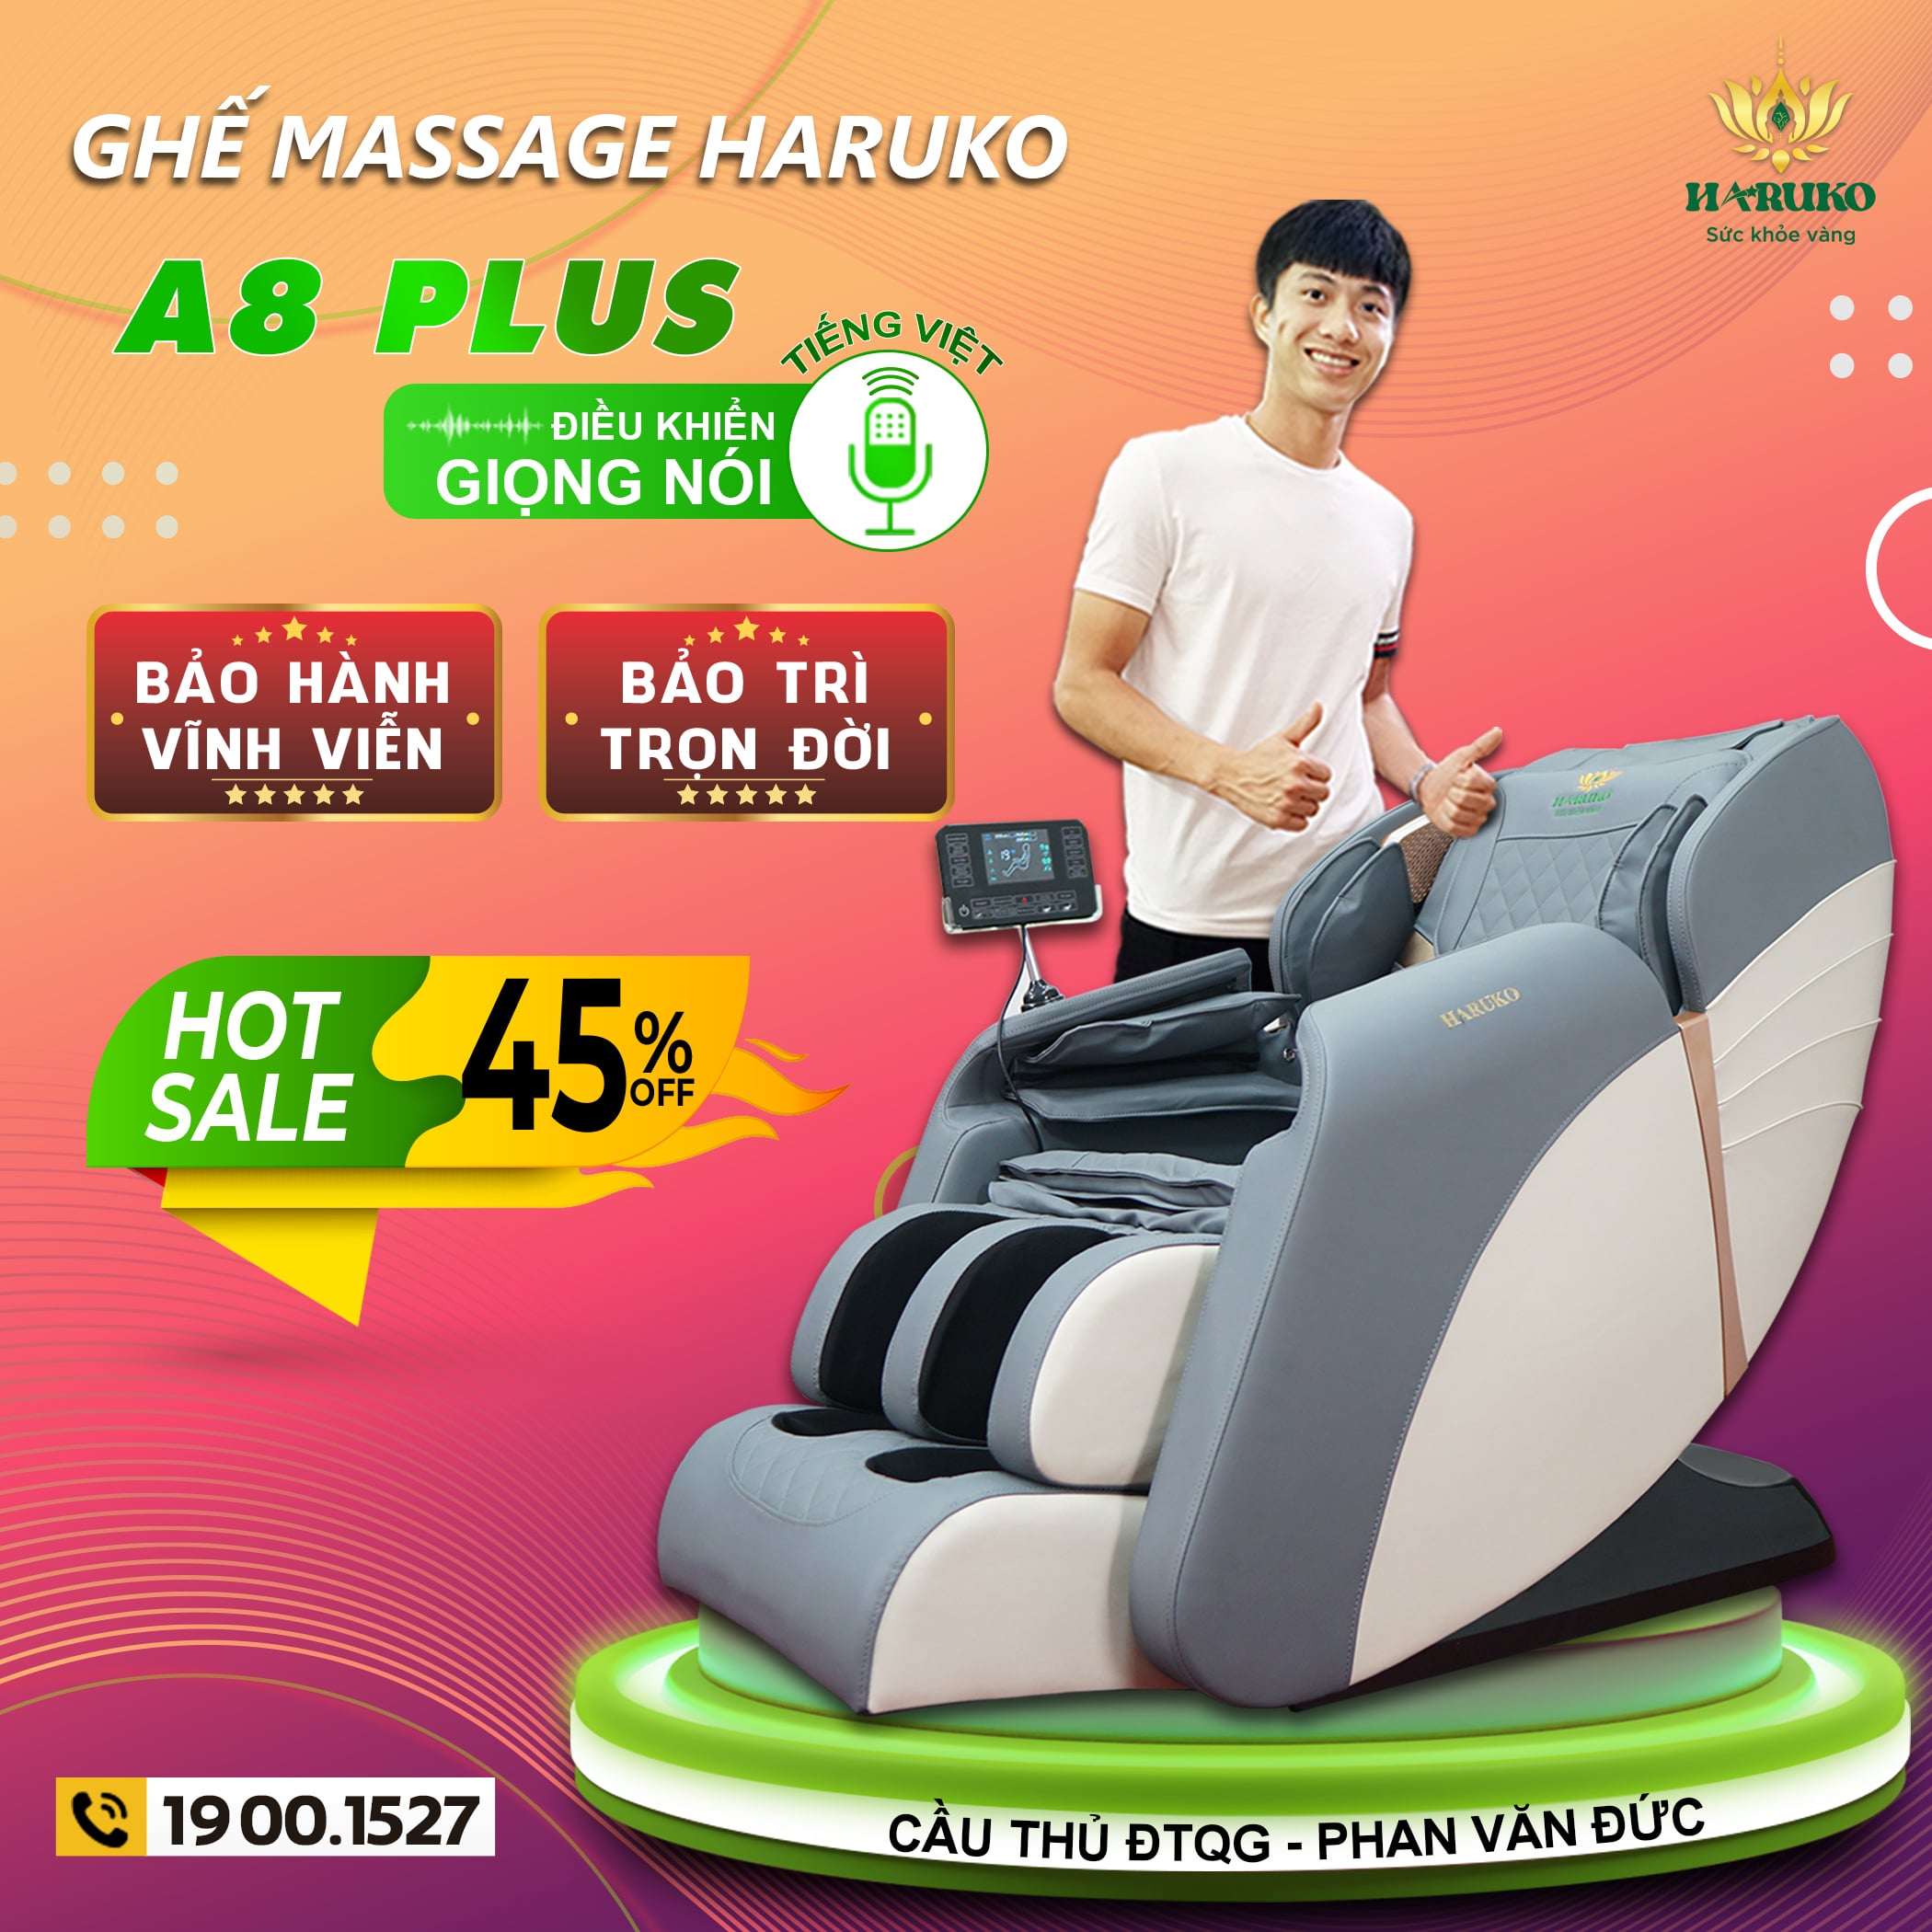 Chính sách bảo hành của ghế massage Haruko-A8 luôn thu hút được sự quan tâm của vô số khách hàng mới